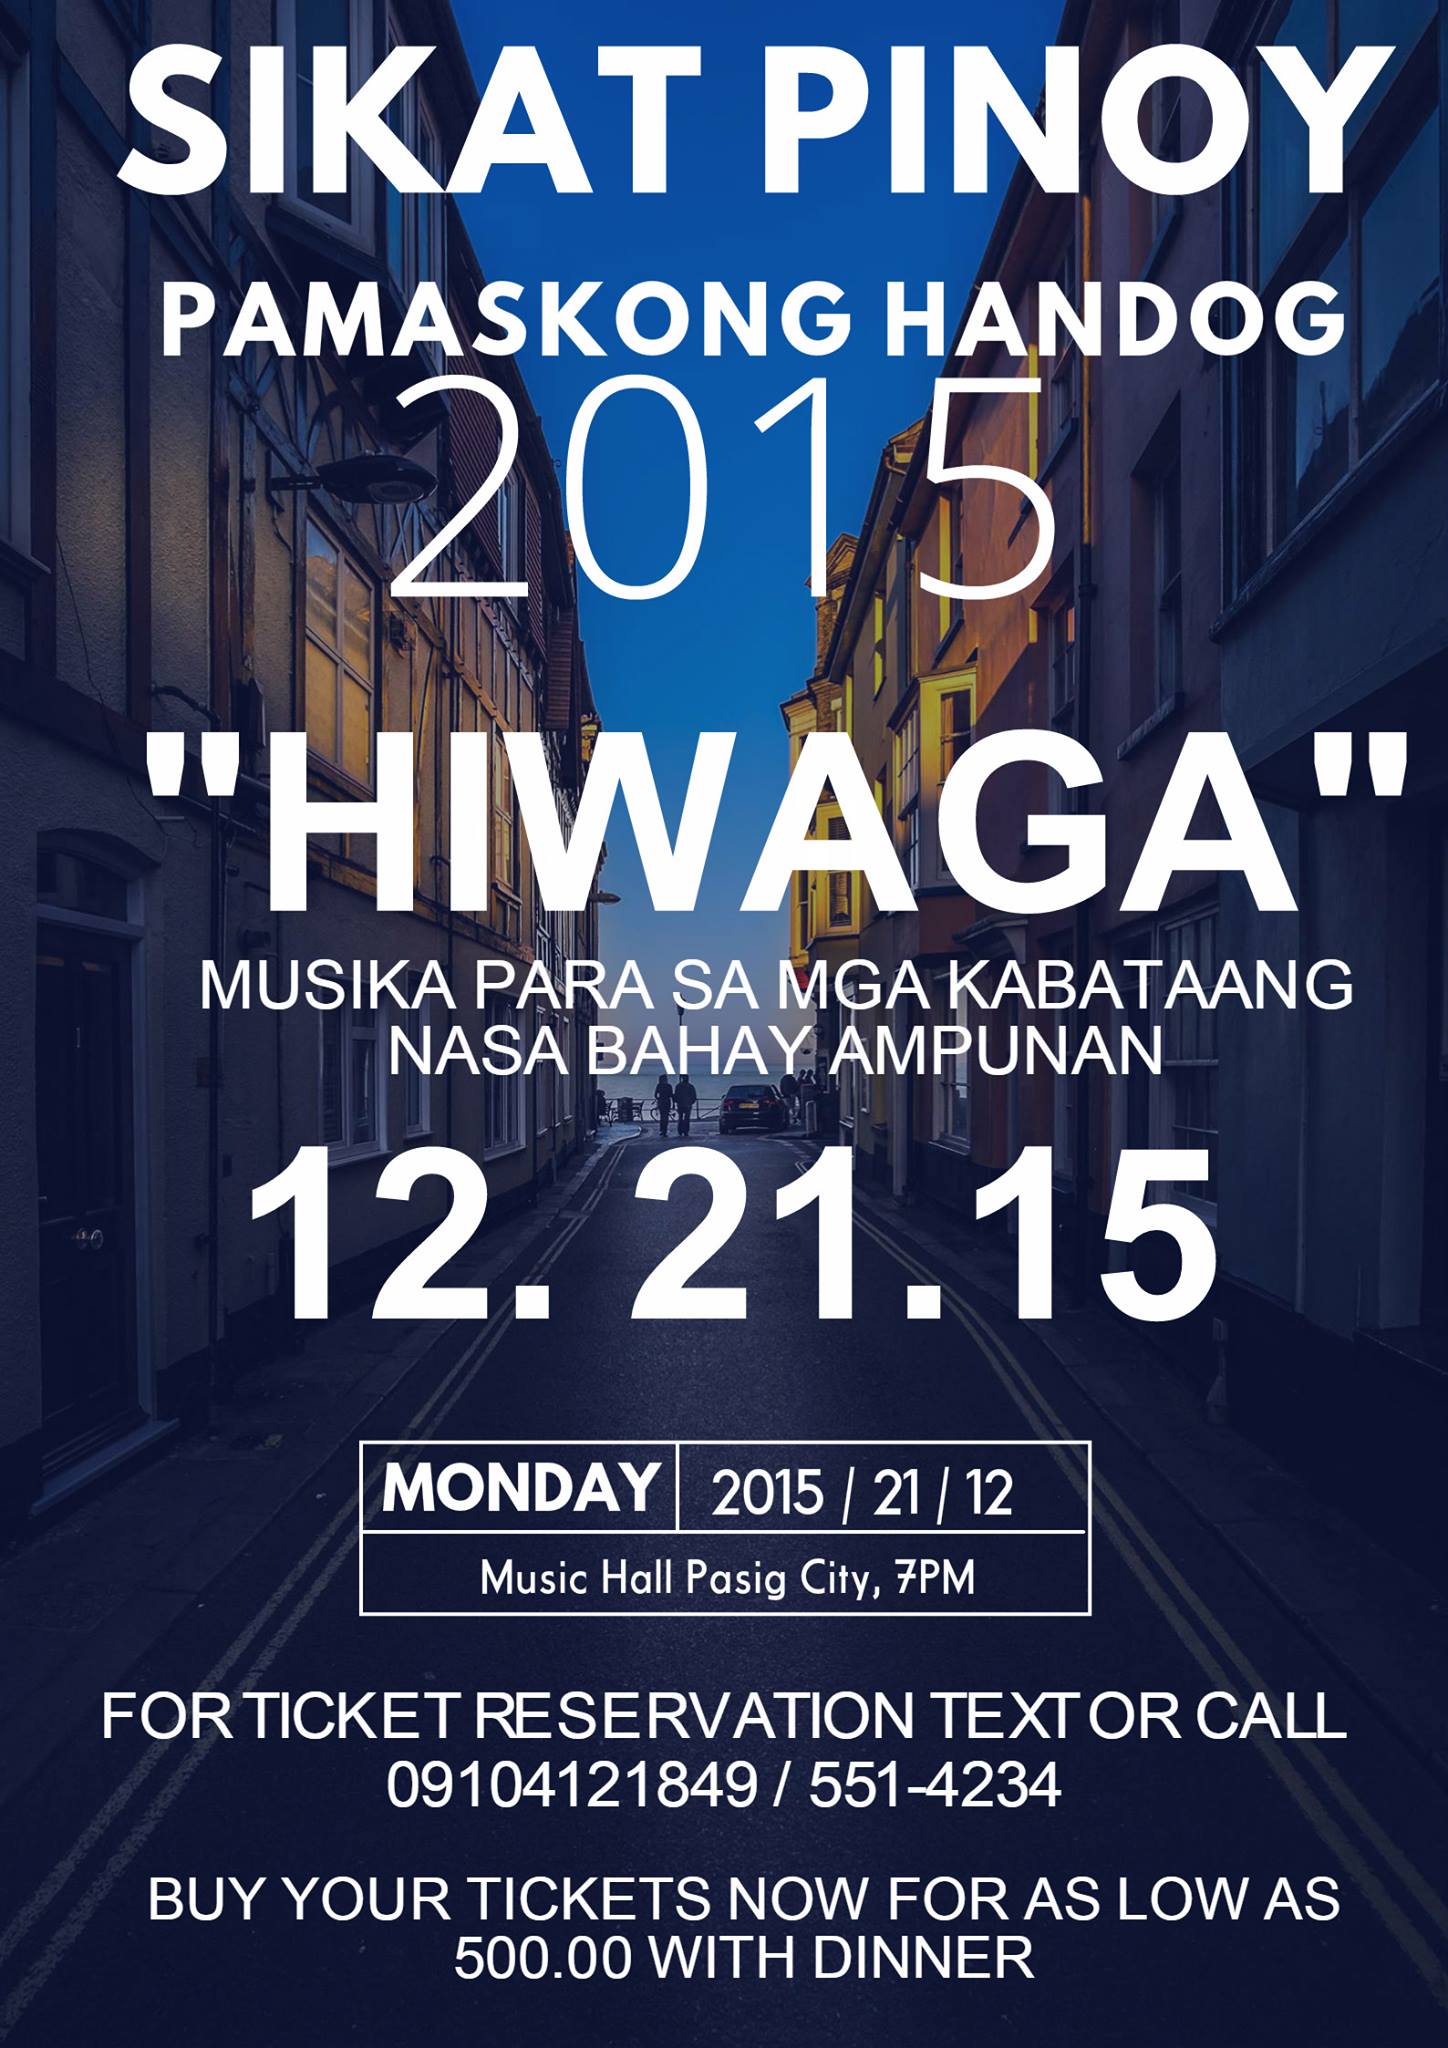 SIKAT PINOY PAMASKONG HANDOG 2015 clock Monday, December 21 at 7 PM Starts within an hour · 82°F Mostly Cloudy pin Show Map The Music Hall At Metrowalk Pasig, Philippines ITO AY MUSIKA PARA SA MGA KABATAANG NASA BAHAY AMPUNAN. ISA SA MGA PROYEKTO NG SIKAT PINOY GRAND FINALIST NA MAKATULONG AT MAKAPAGBIGAY SAYA SA LAHAT NG MGA KABATAANG INIWAN NG KANILANG MGA MAGULANG. HOPE AND INSPIRATION YAN PO ANG SIMBULO NG AMING PASKO. TARA NA AT MAIISA.